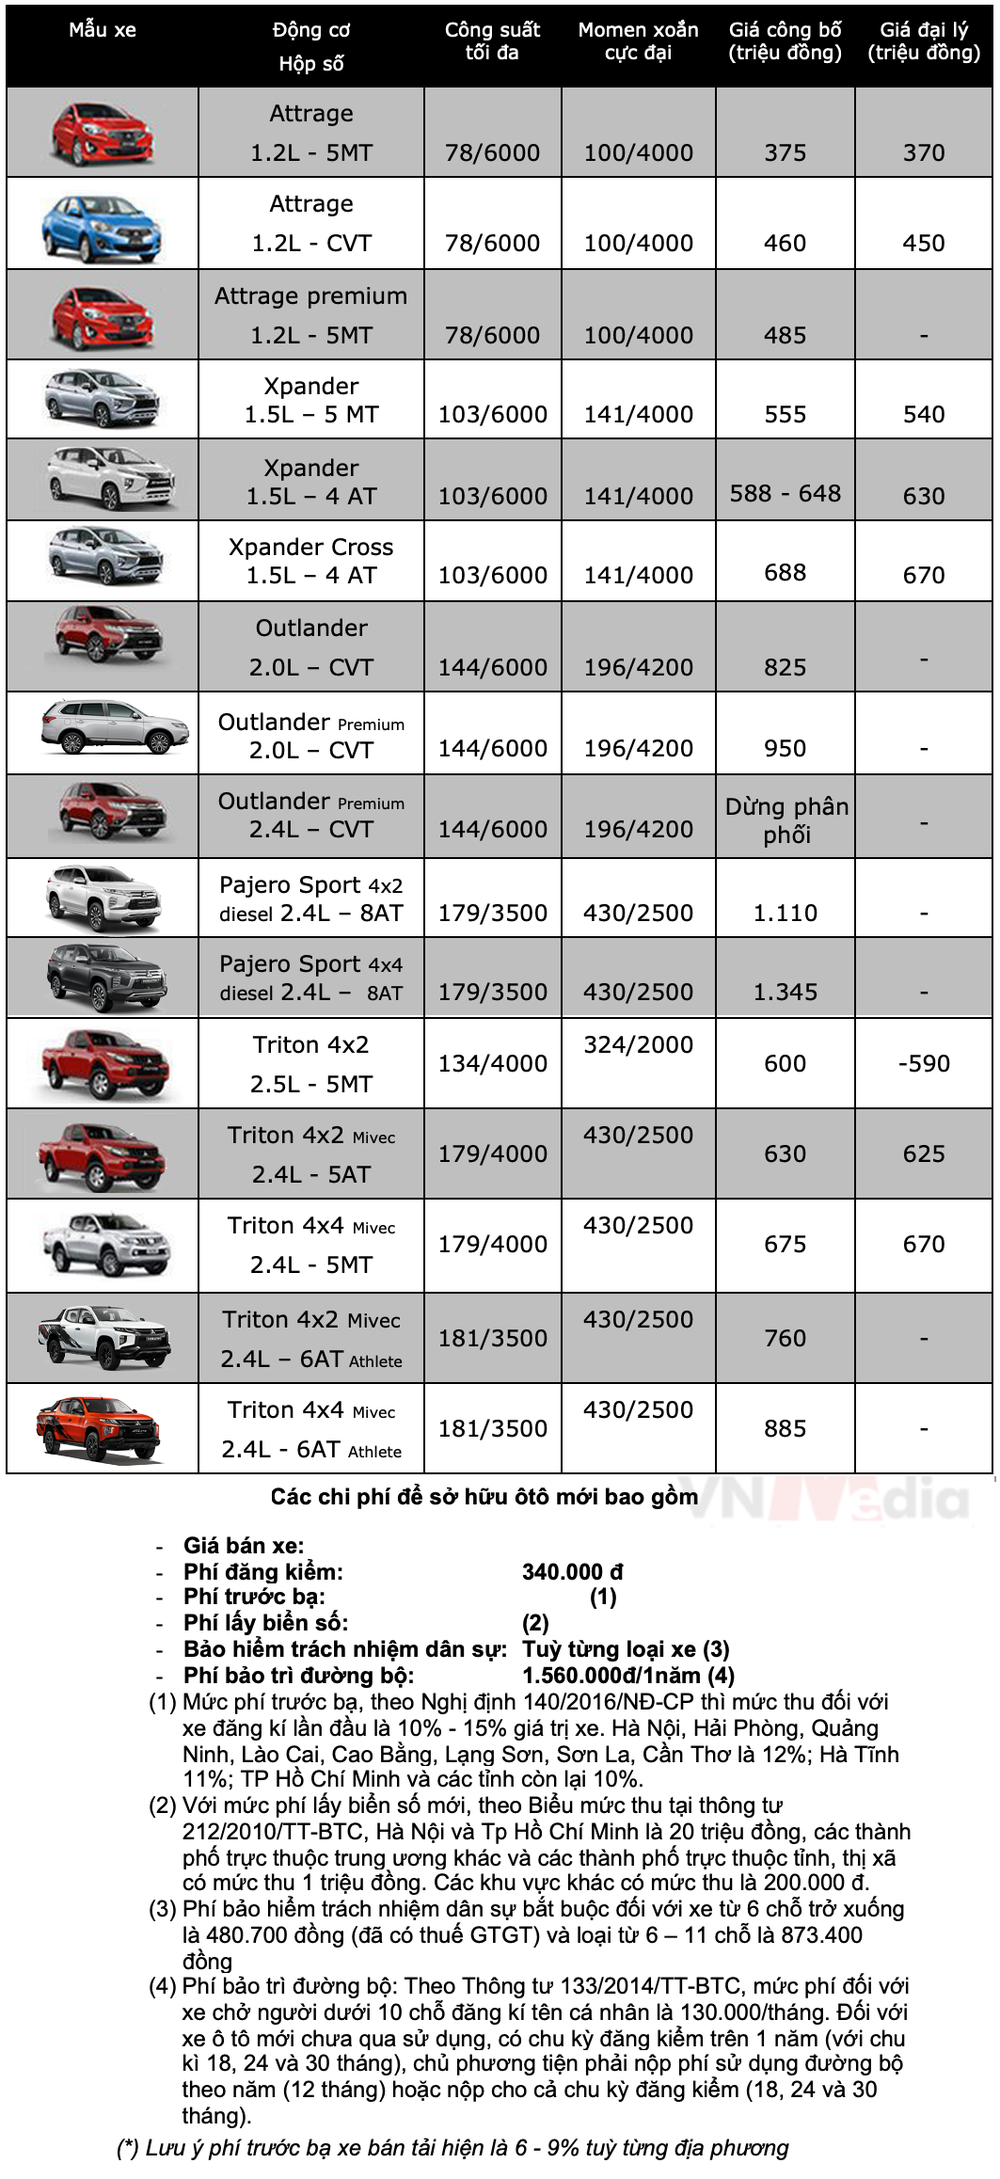 Bảng giá xe Mitsubishi tháng 1: Mitsubishi Attrage nhận ưu đãi hơn 16 triệu đồng - Ảnh 2.